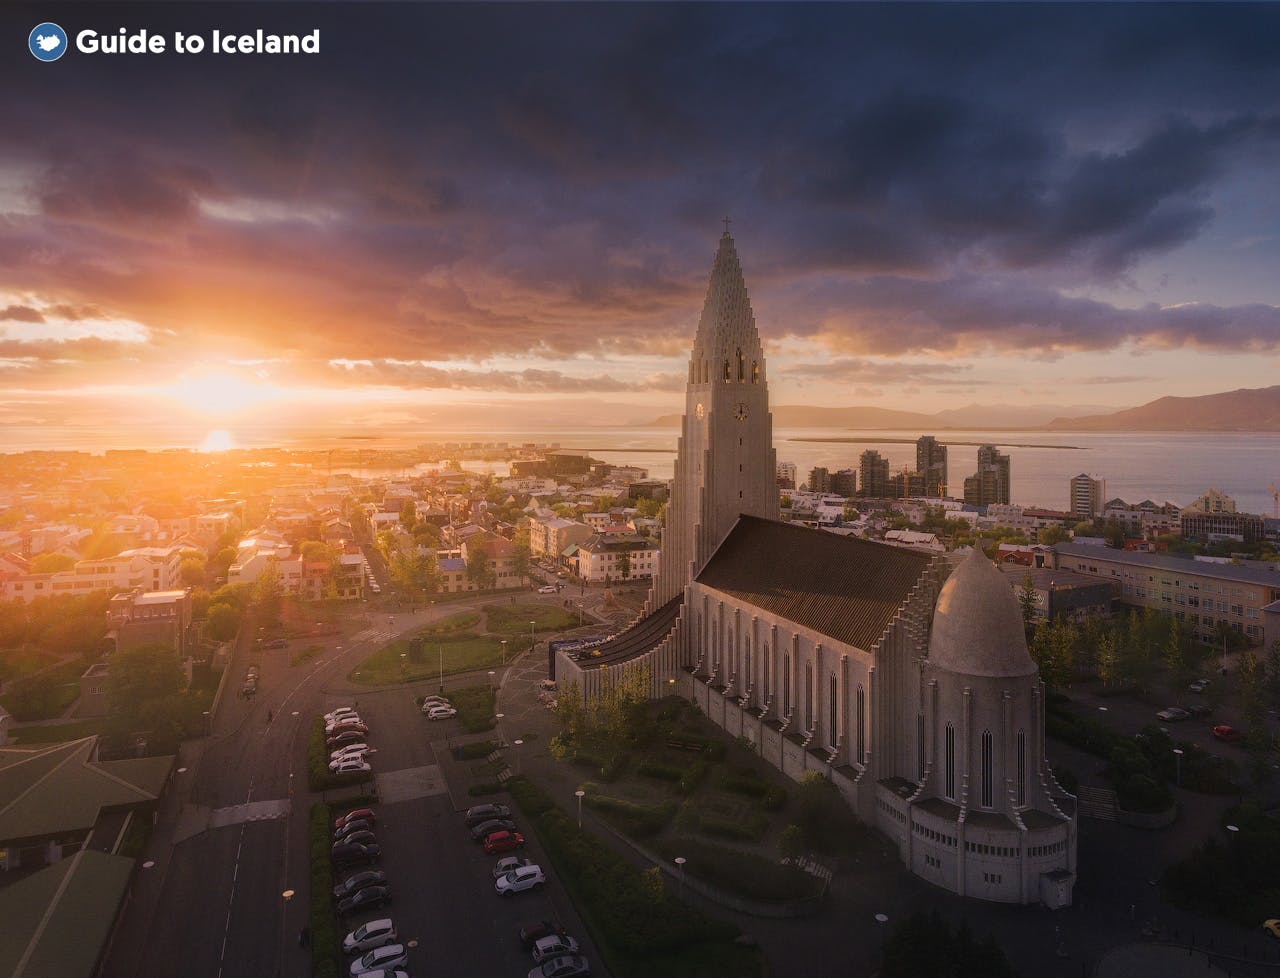 Hallgrímskirkjain i centrum af Reykjavik, taget ved solnedgang.